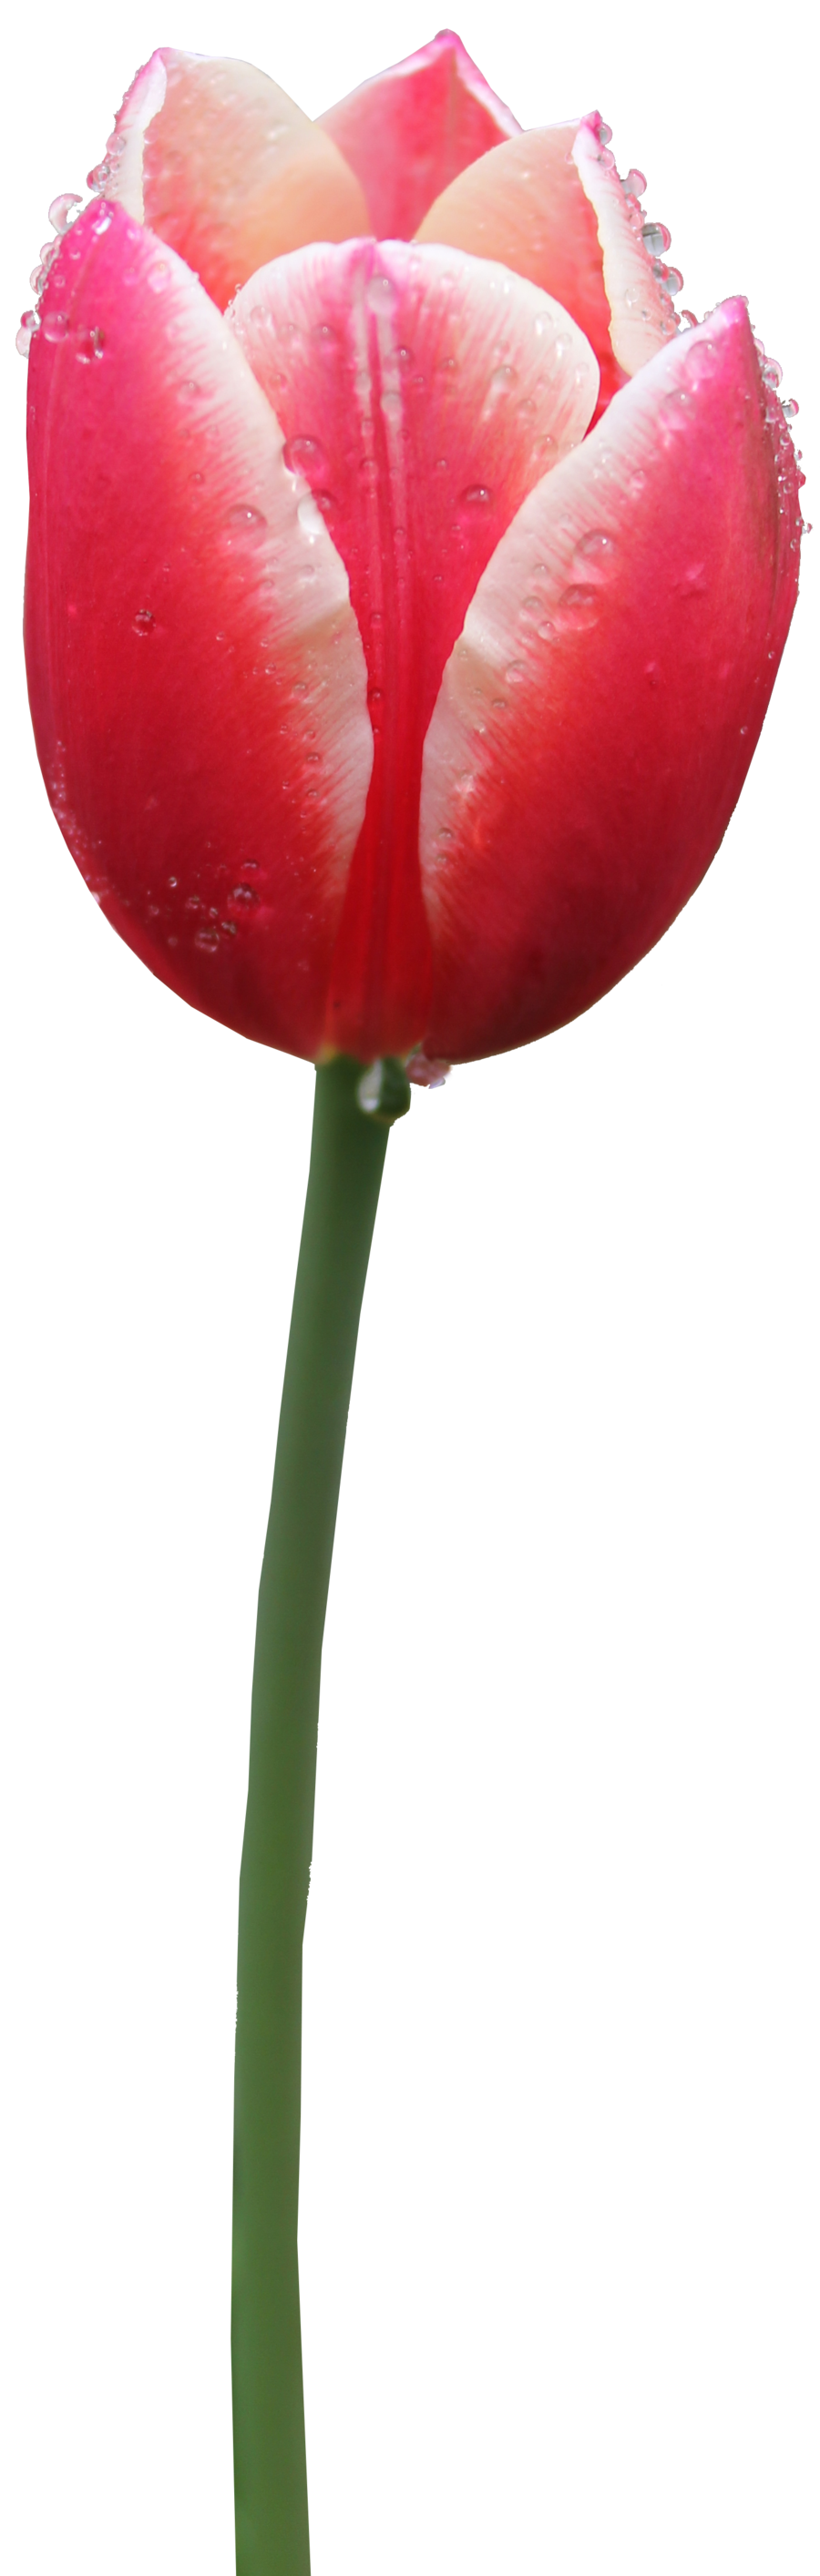 Tulip Free Png Image PNG Image